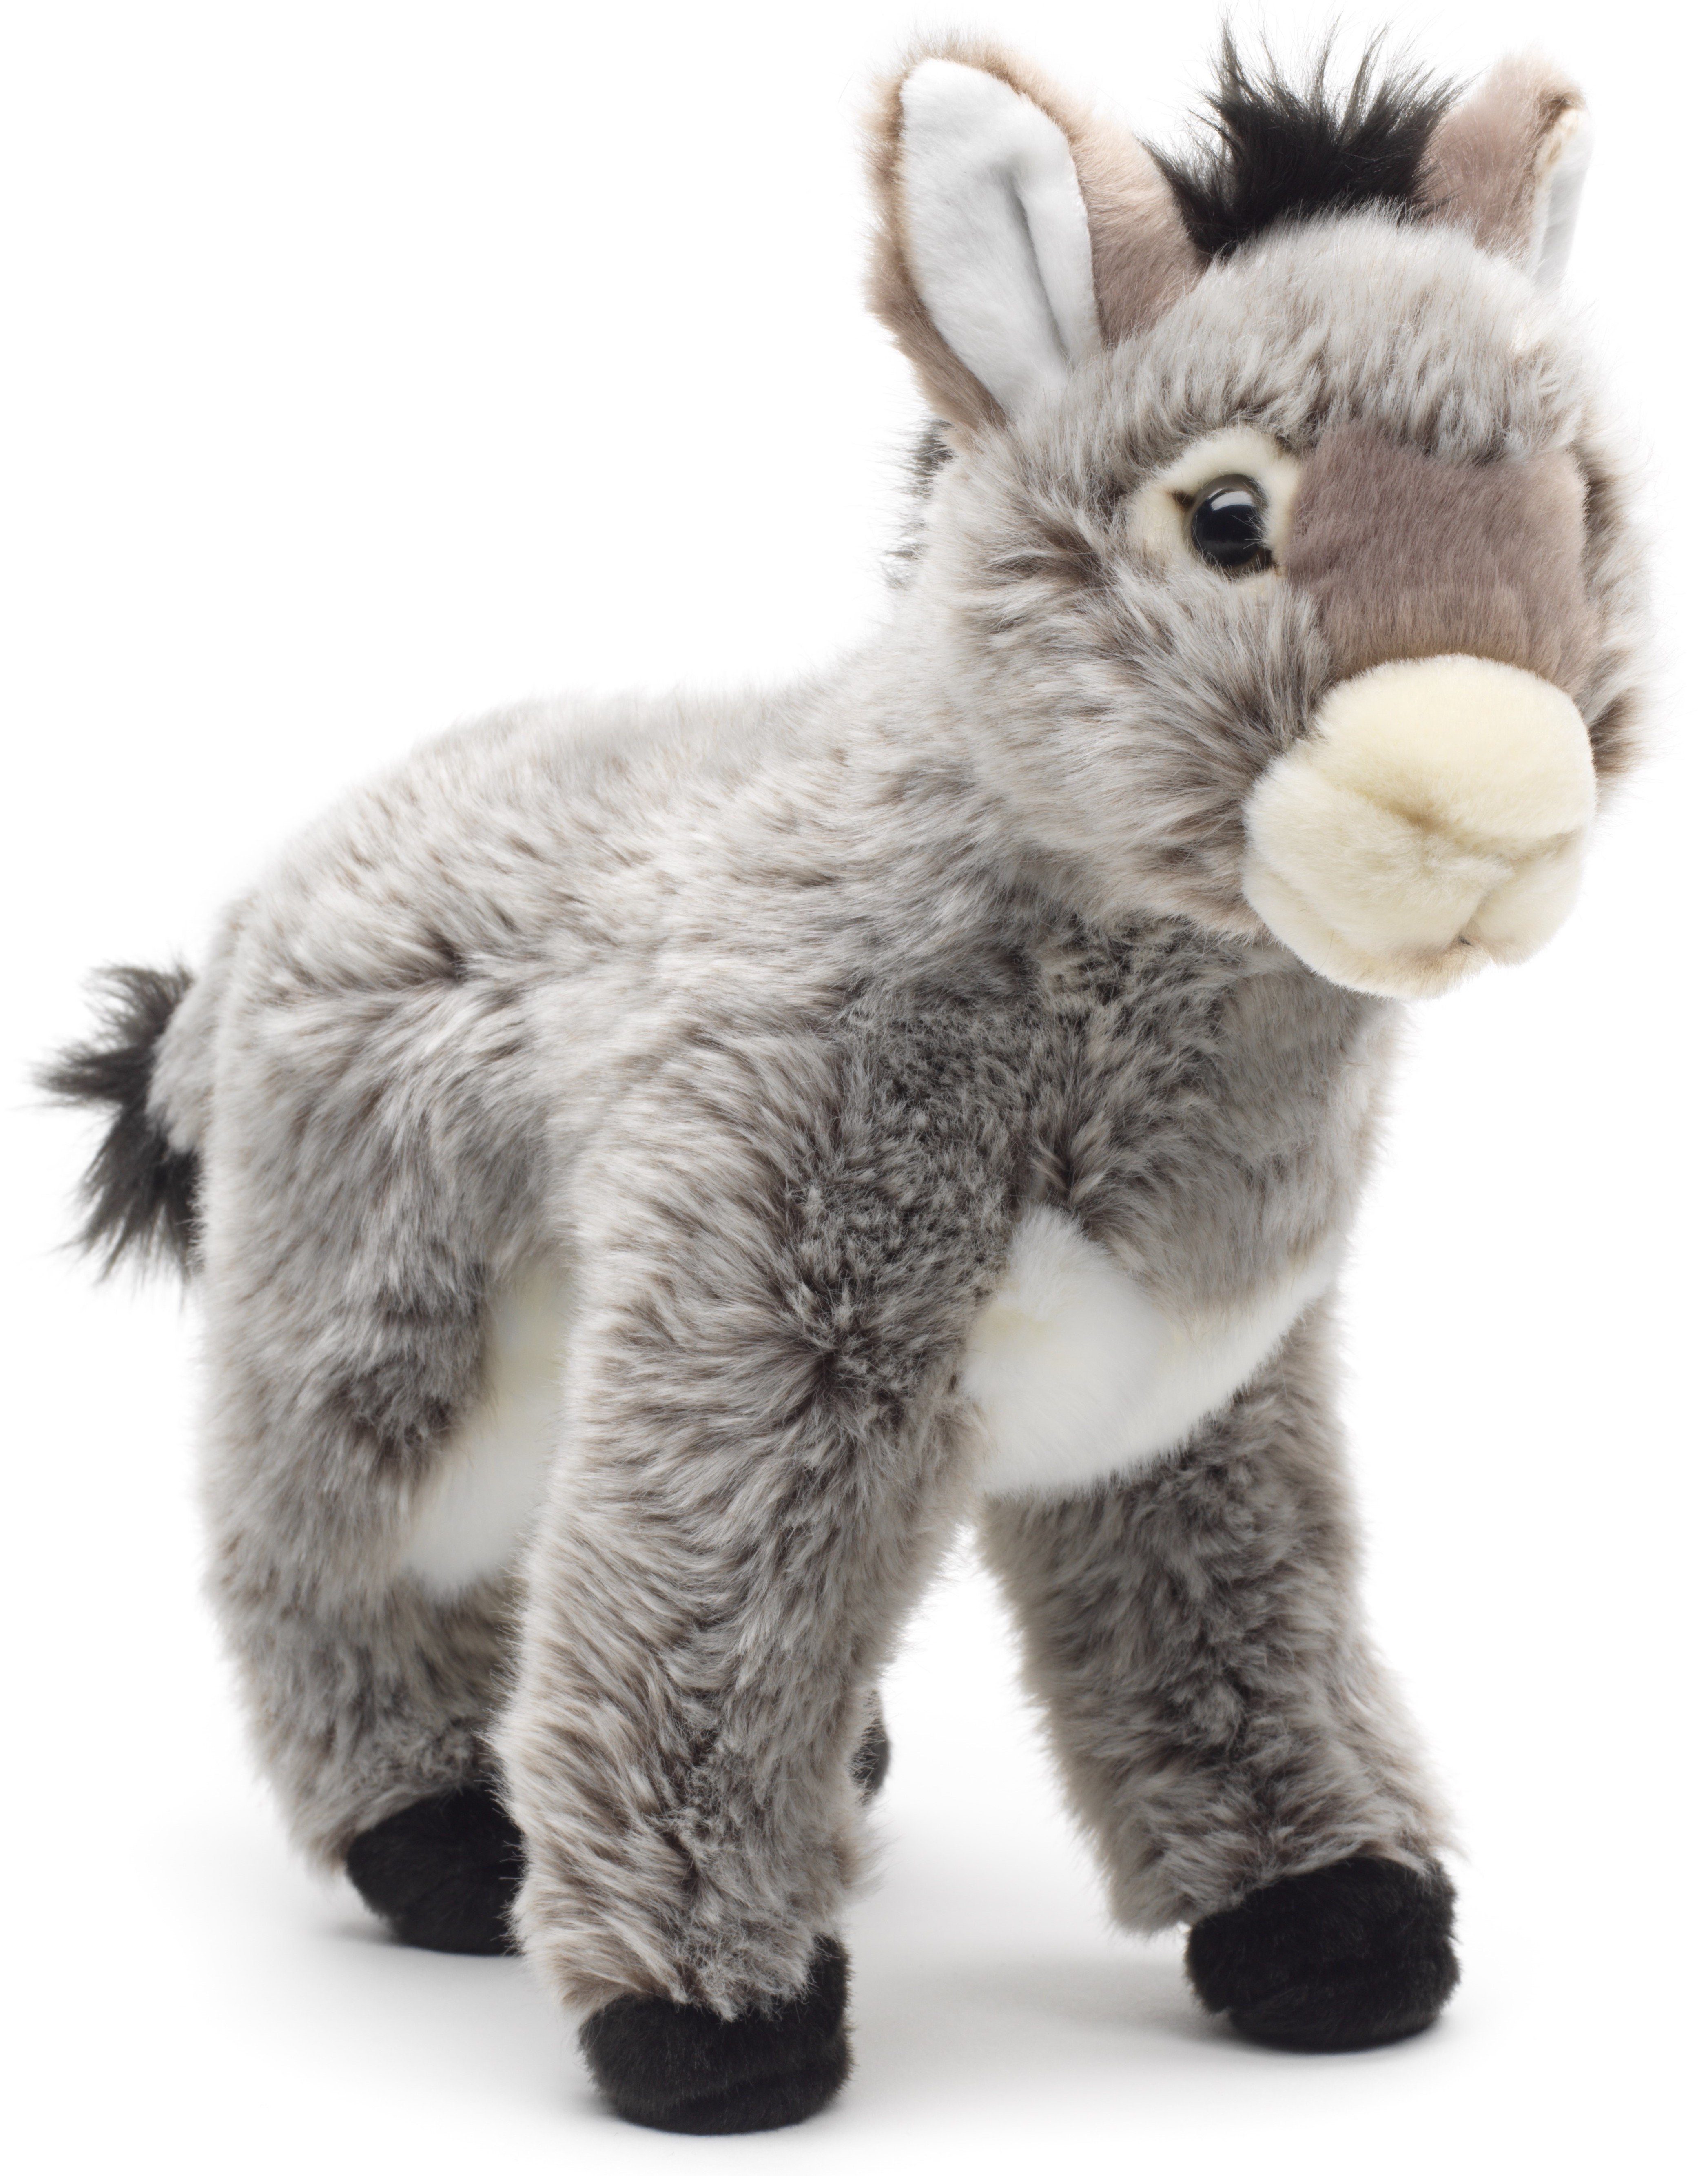 Uni-Toys Kuscheltier Esel grau, stehend - 28 cm (Höhe) - Plüsch-Pferd - Plüschtier, zu 100 % recyceltes Füllmaterial